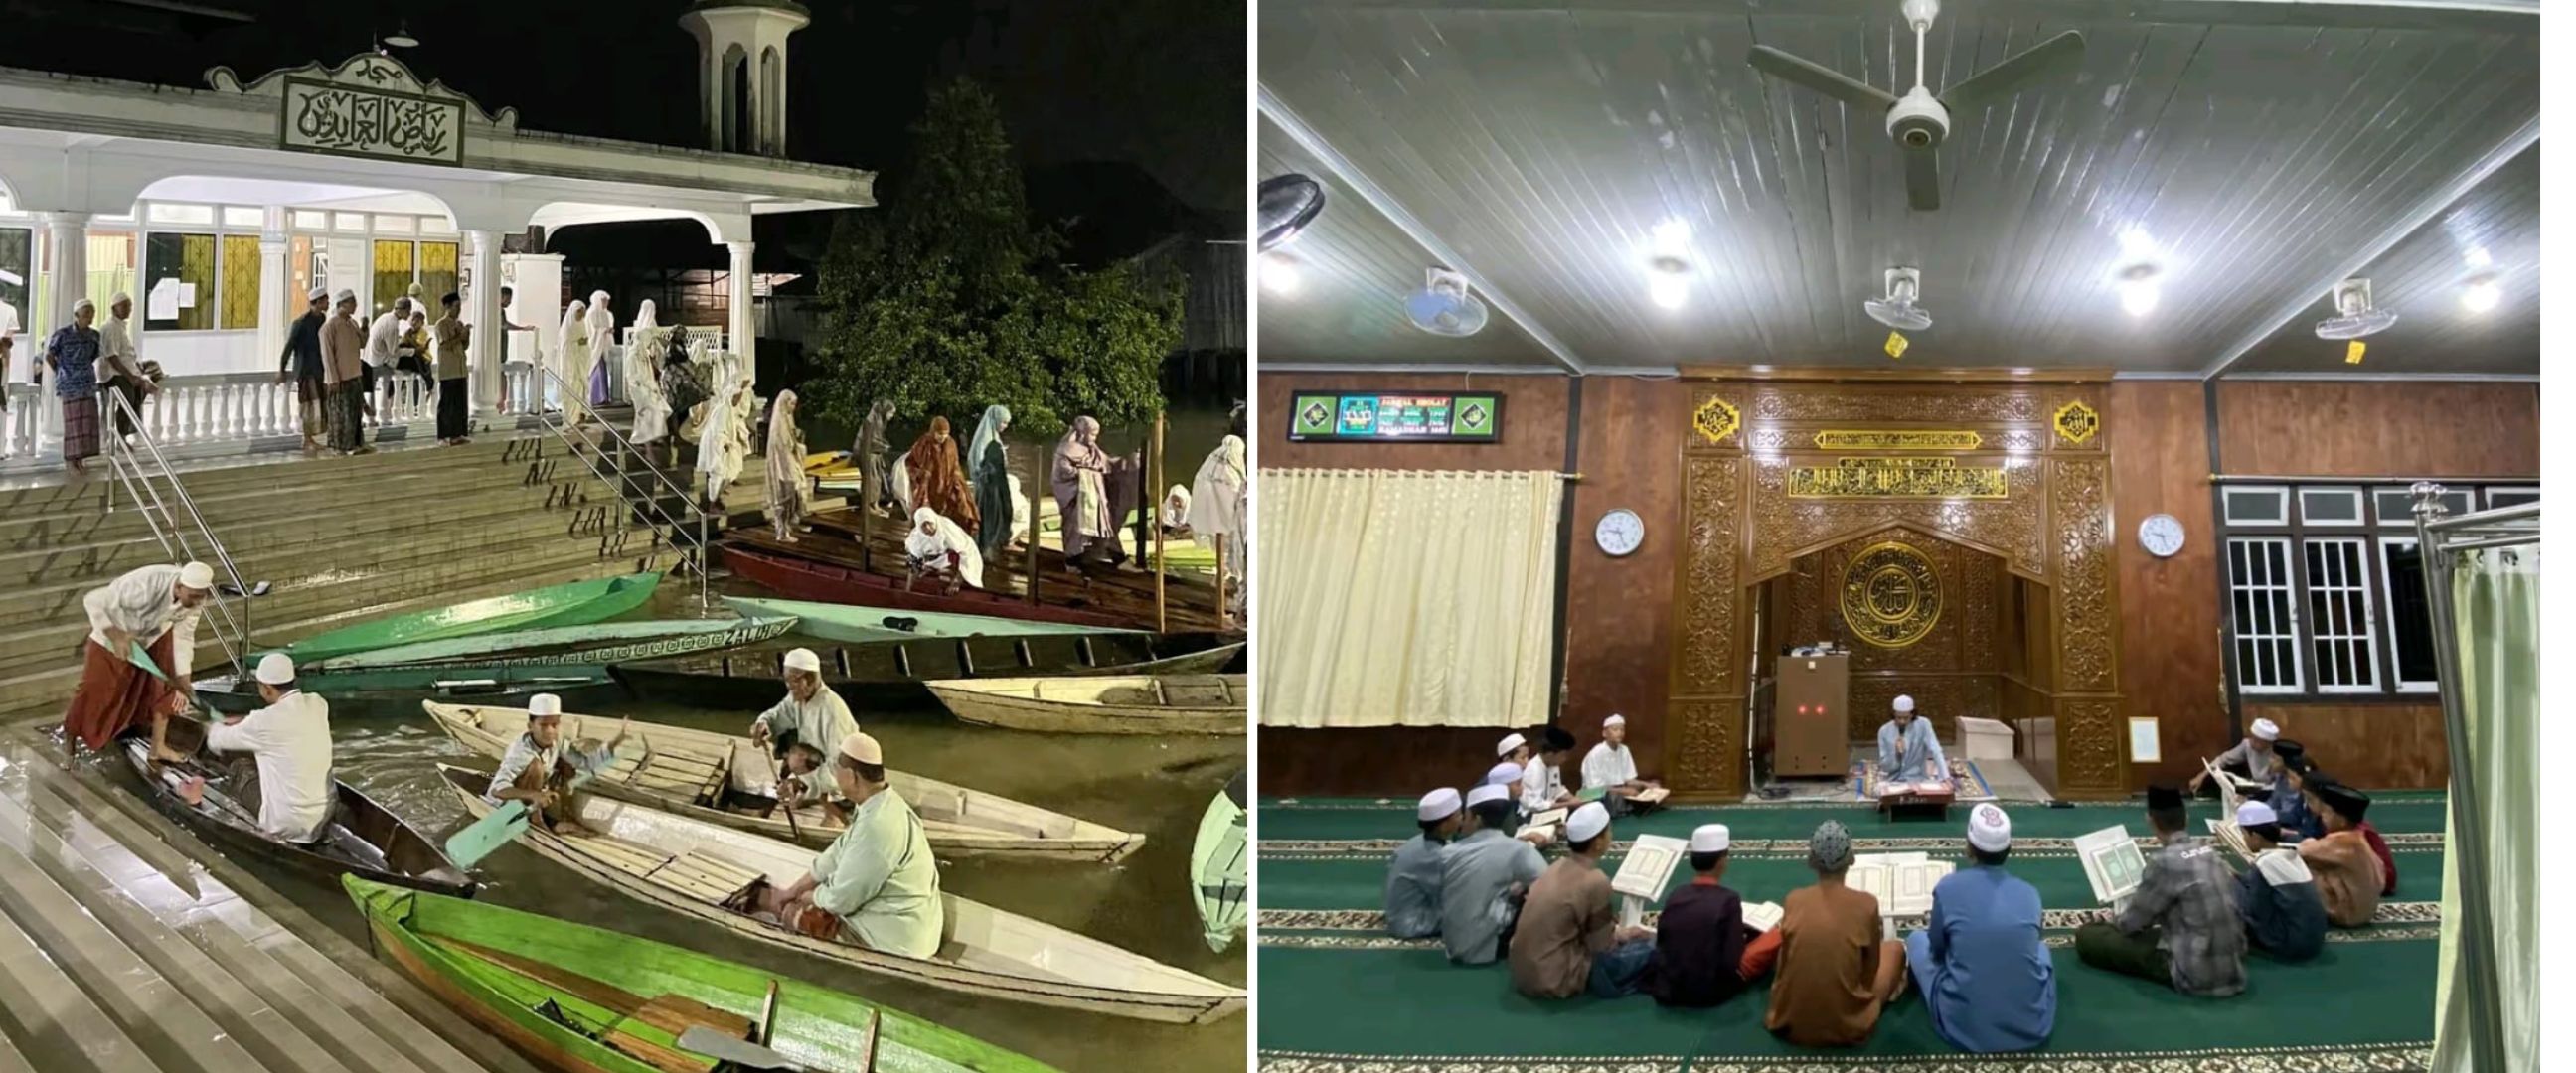 Tetap tarawih meski dilanda banjir, perjuangan warga Jambi naik sampan demi ke masjid ini tuai sorotan